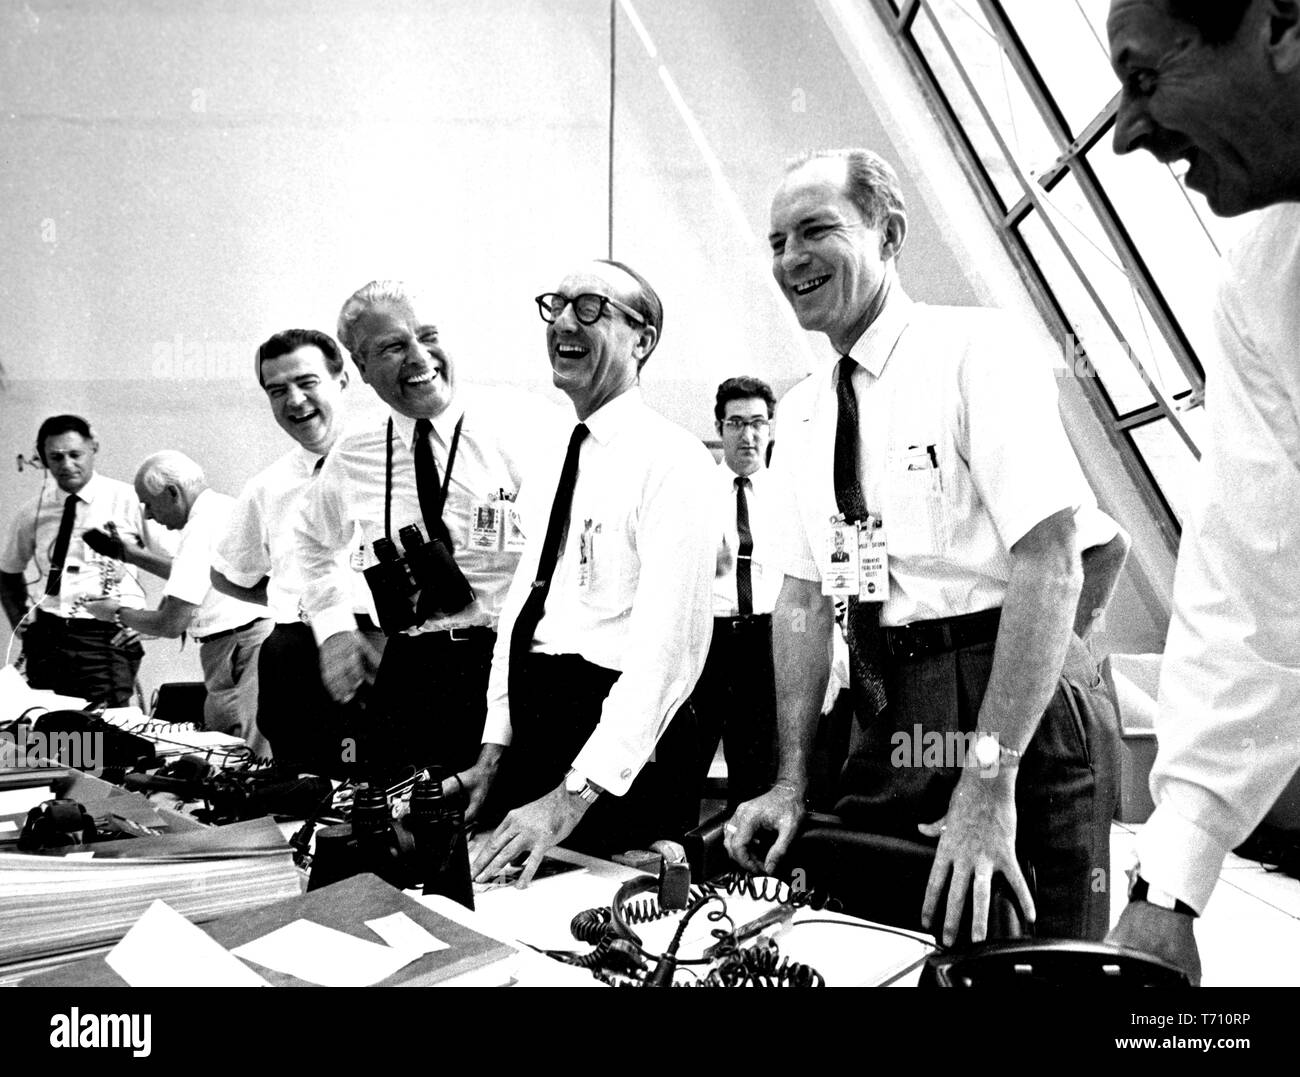 Les responsables de la mission Apollo 11 se détendre dans le centre de contrôle de lancement au Centre spatial Kennedy sur Merritt Island, en Floride, y compris Charles W Mathews, le Dr Wernher von Braun, George Mueller, et le général Samuel C Phillips, le 16 juillet 1969. Droit avec la permission de la National Aeronautics and Space Administration (NASA). () Banque D'Images